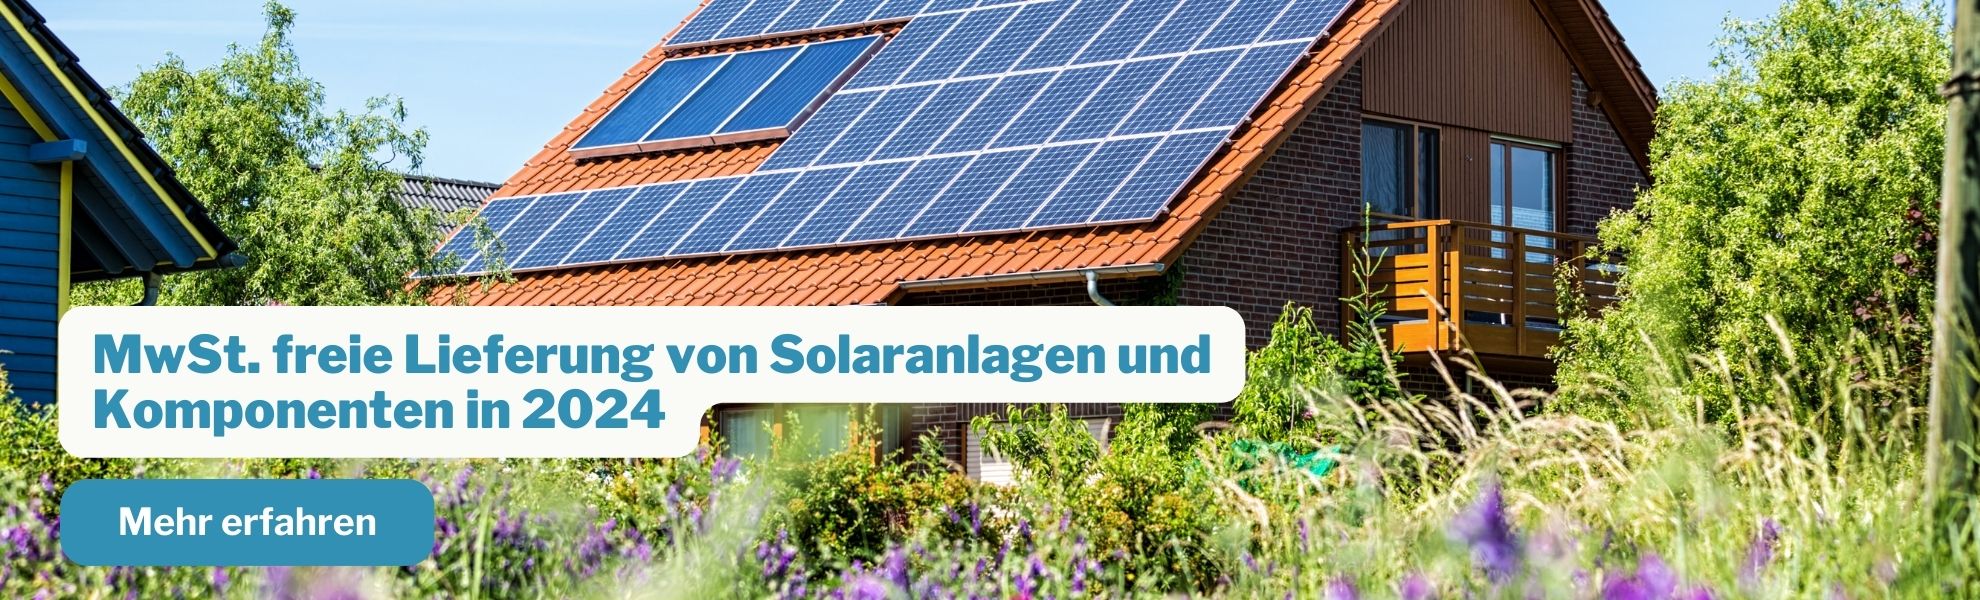 Mehrwertsteuerfreie-Lieferung-von-Solaranlagen-und-KomponentenMobile3.jpg